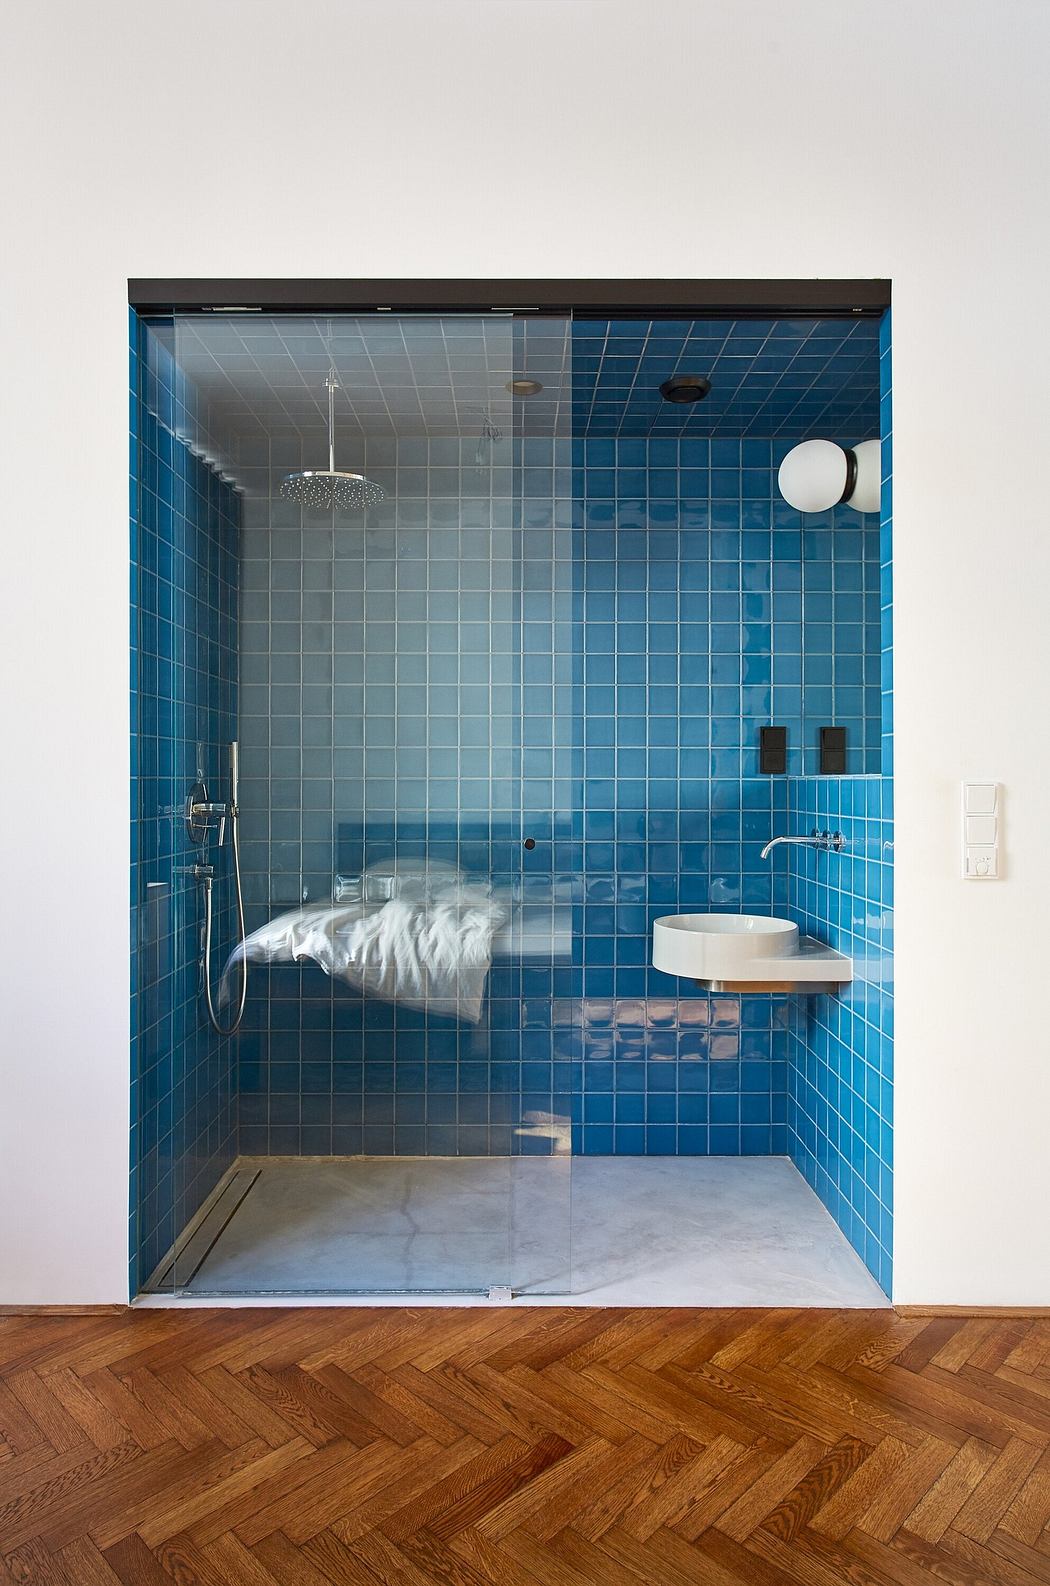 Modern bathroom with blue tiles, glass door, and herringbone wood floor.